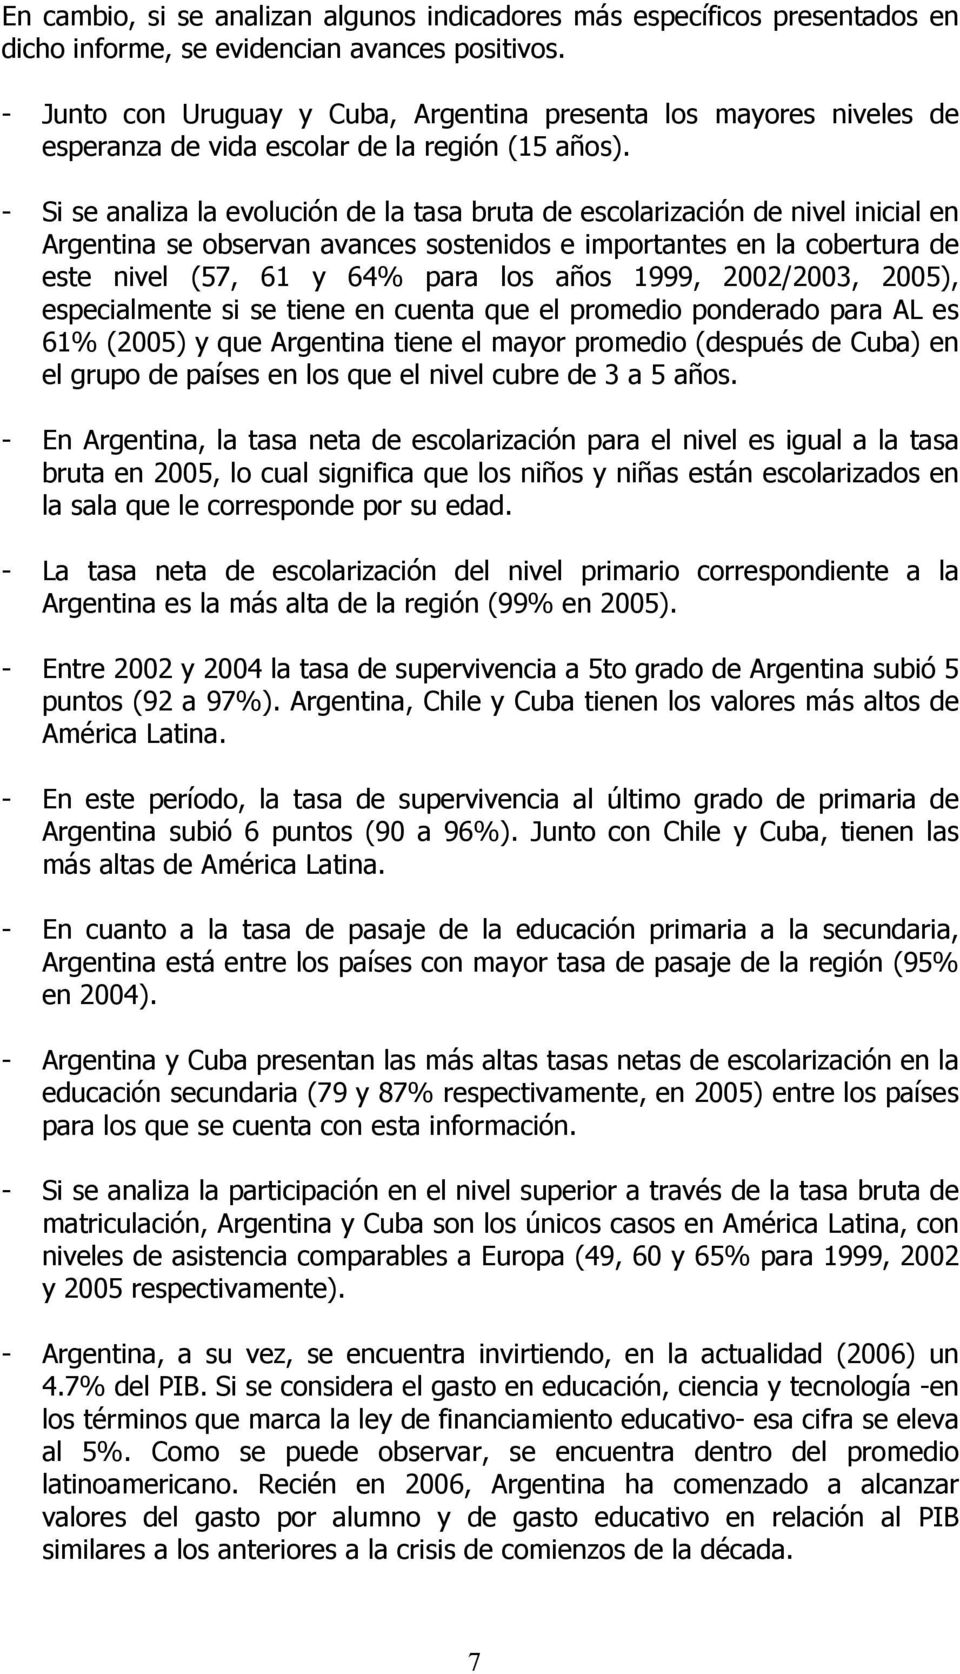 - Si se analiza la evolución de la tasa bruta de escolarización de nivel inicial en Argentina se observan avances sostenidos e importantes en la cobertura de este nivel (57, 61 y 64% para los años